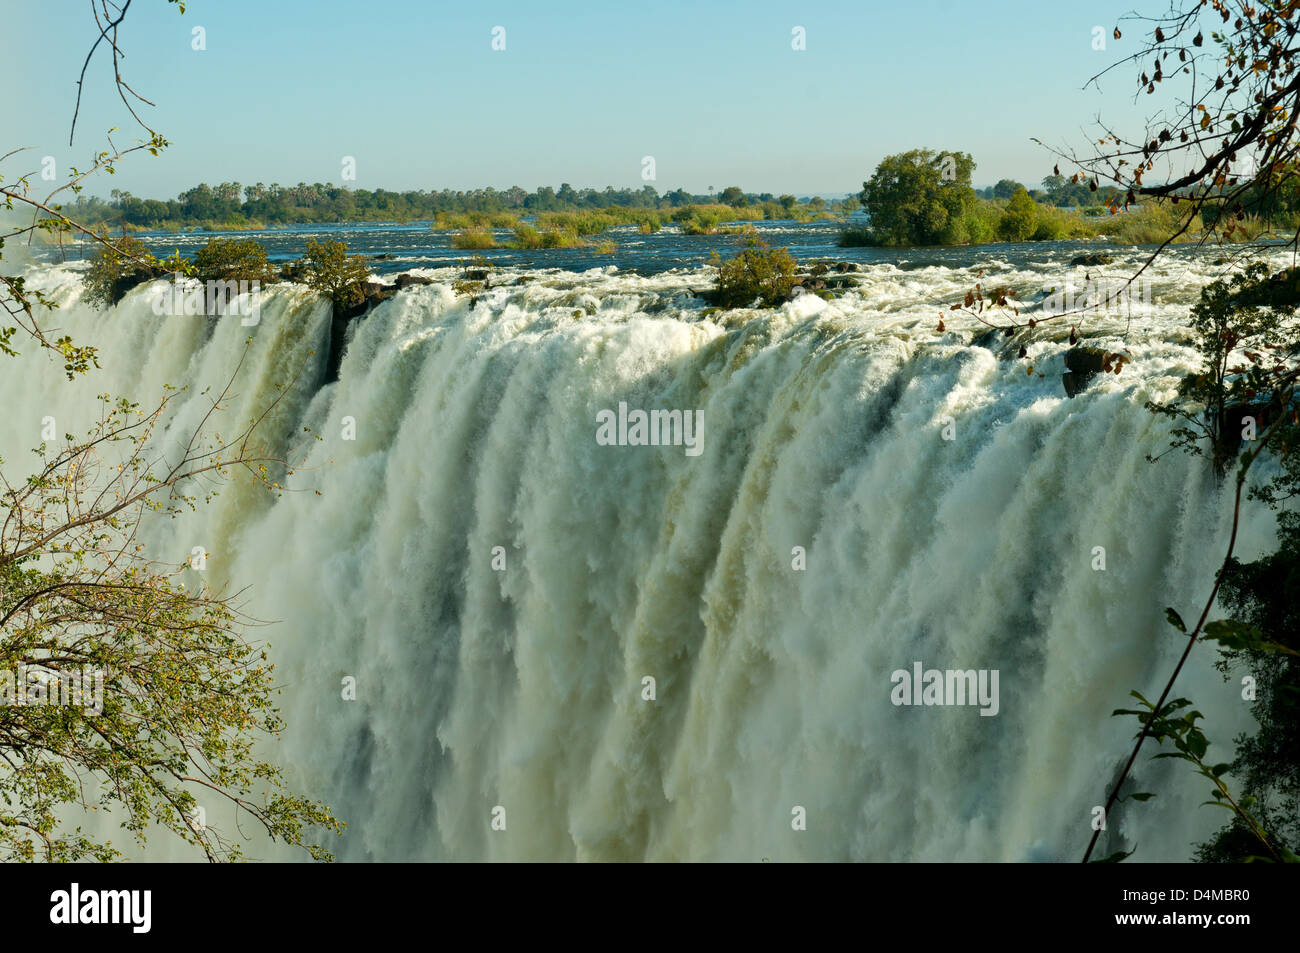 Victoria Falls, near Livingstone, Zambia Stock Photo